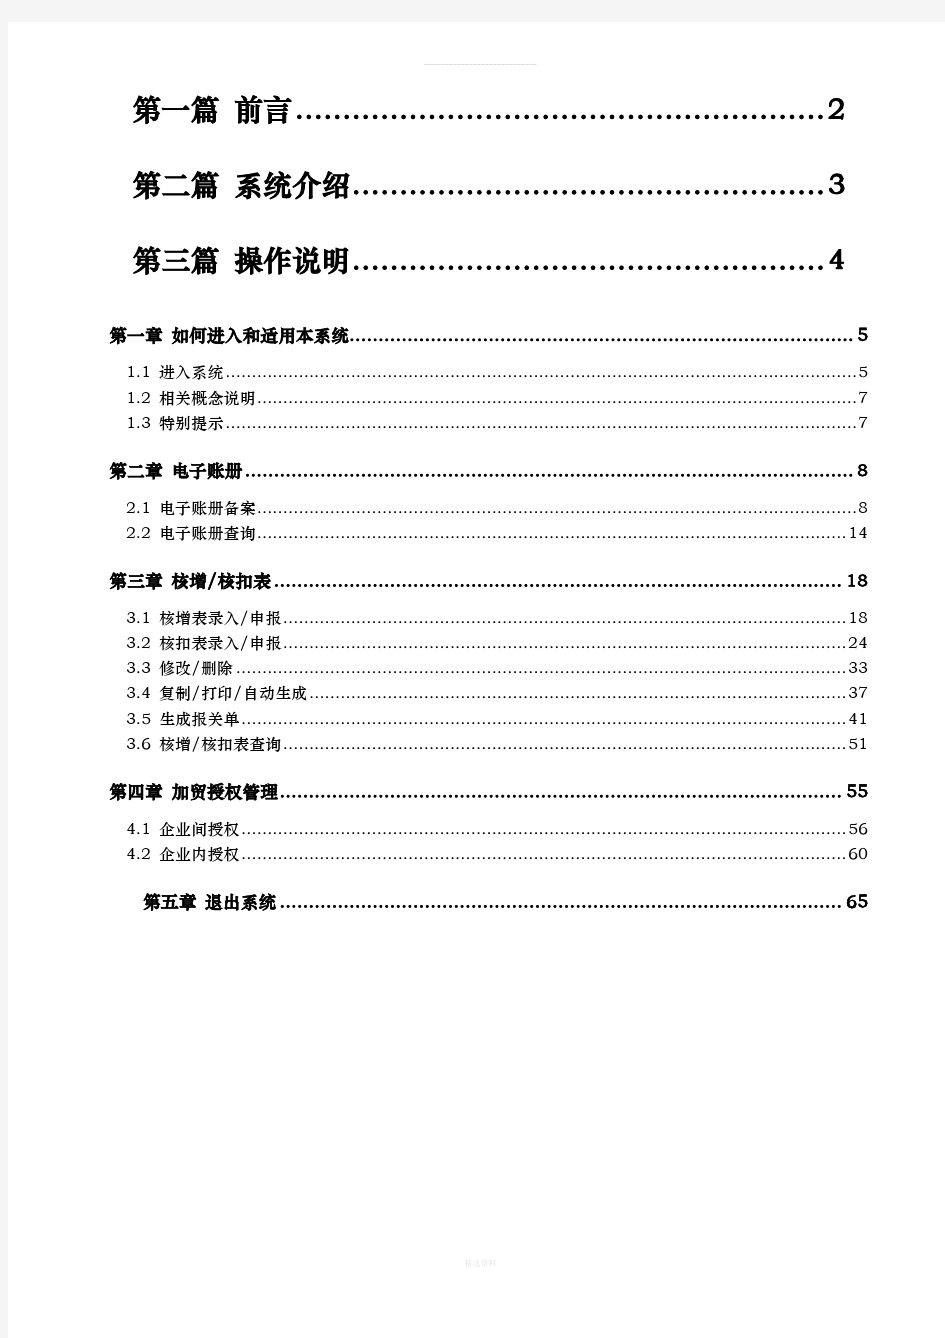 中国电子口岸预录入改进版-保税物流管理系统操作手册